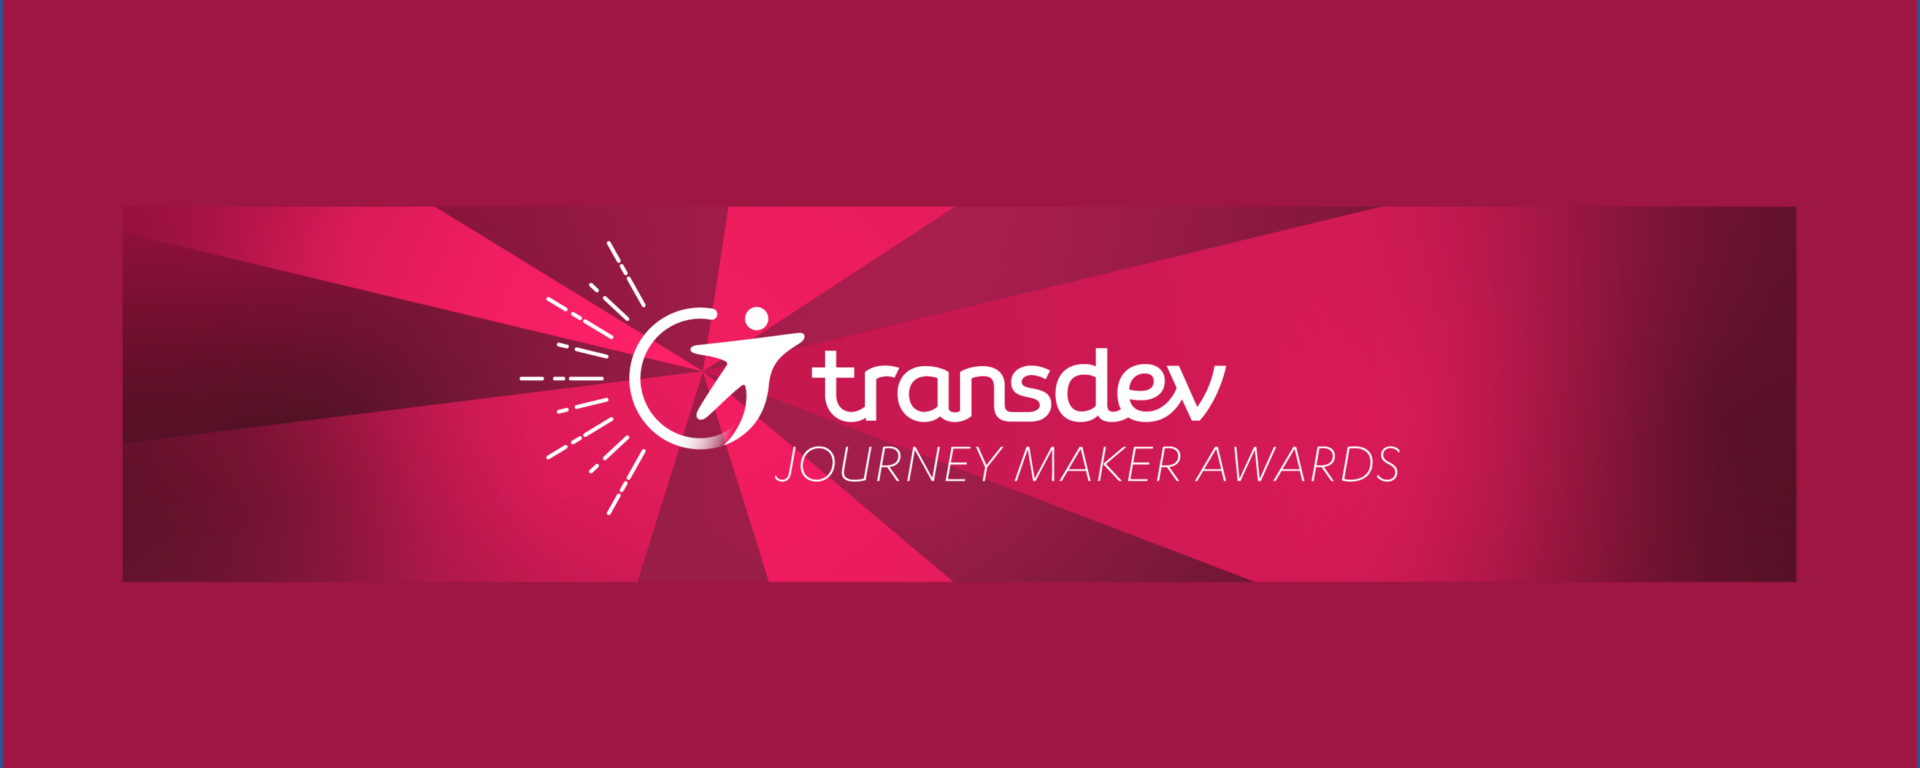 Journey Maker Award Logo